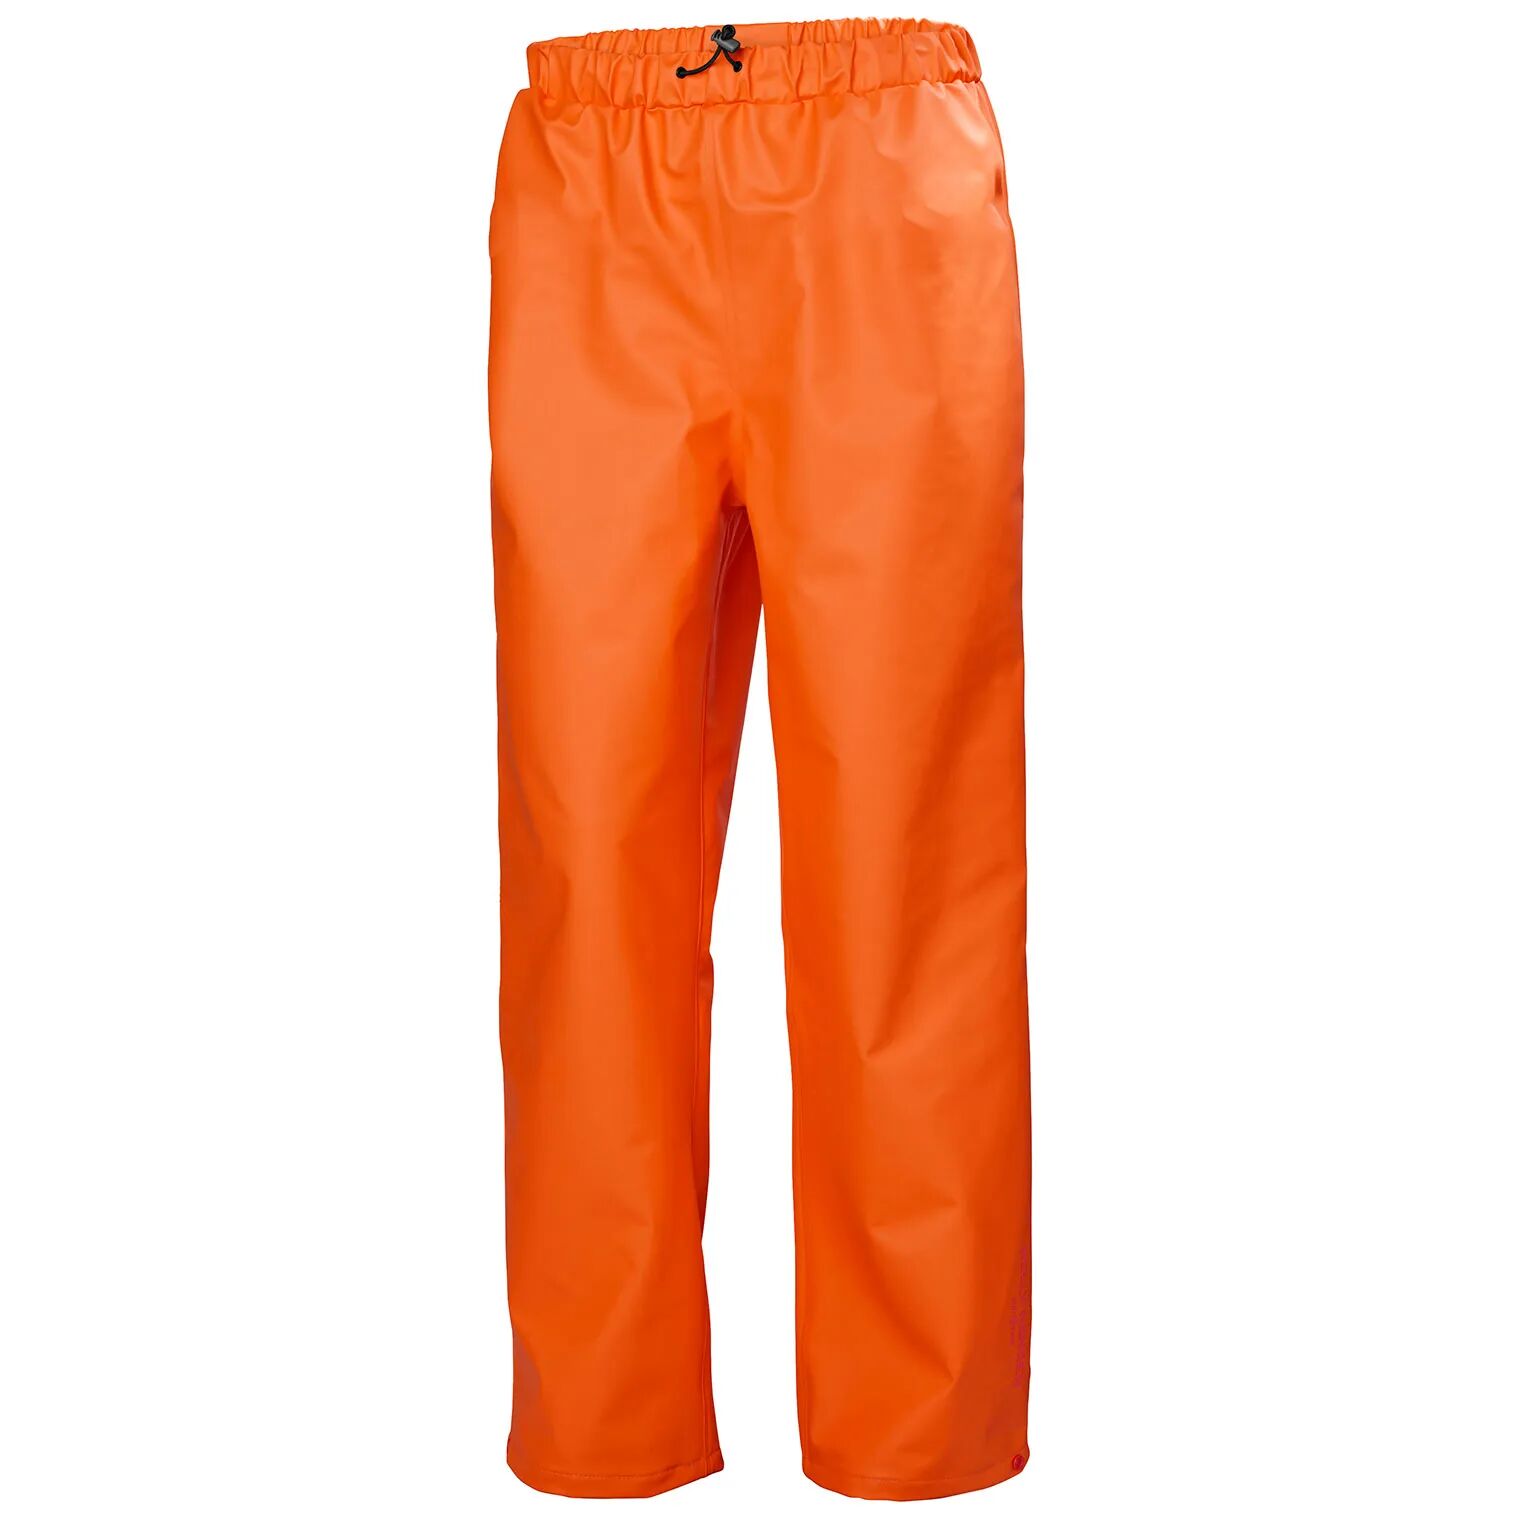 HH Workwear Helly Hansen Work Gale Rain Pant   Hh Workwear XS Orange  Male